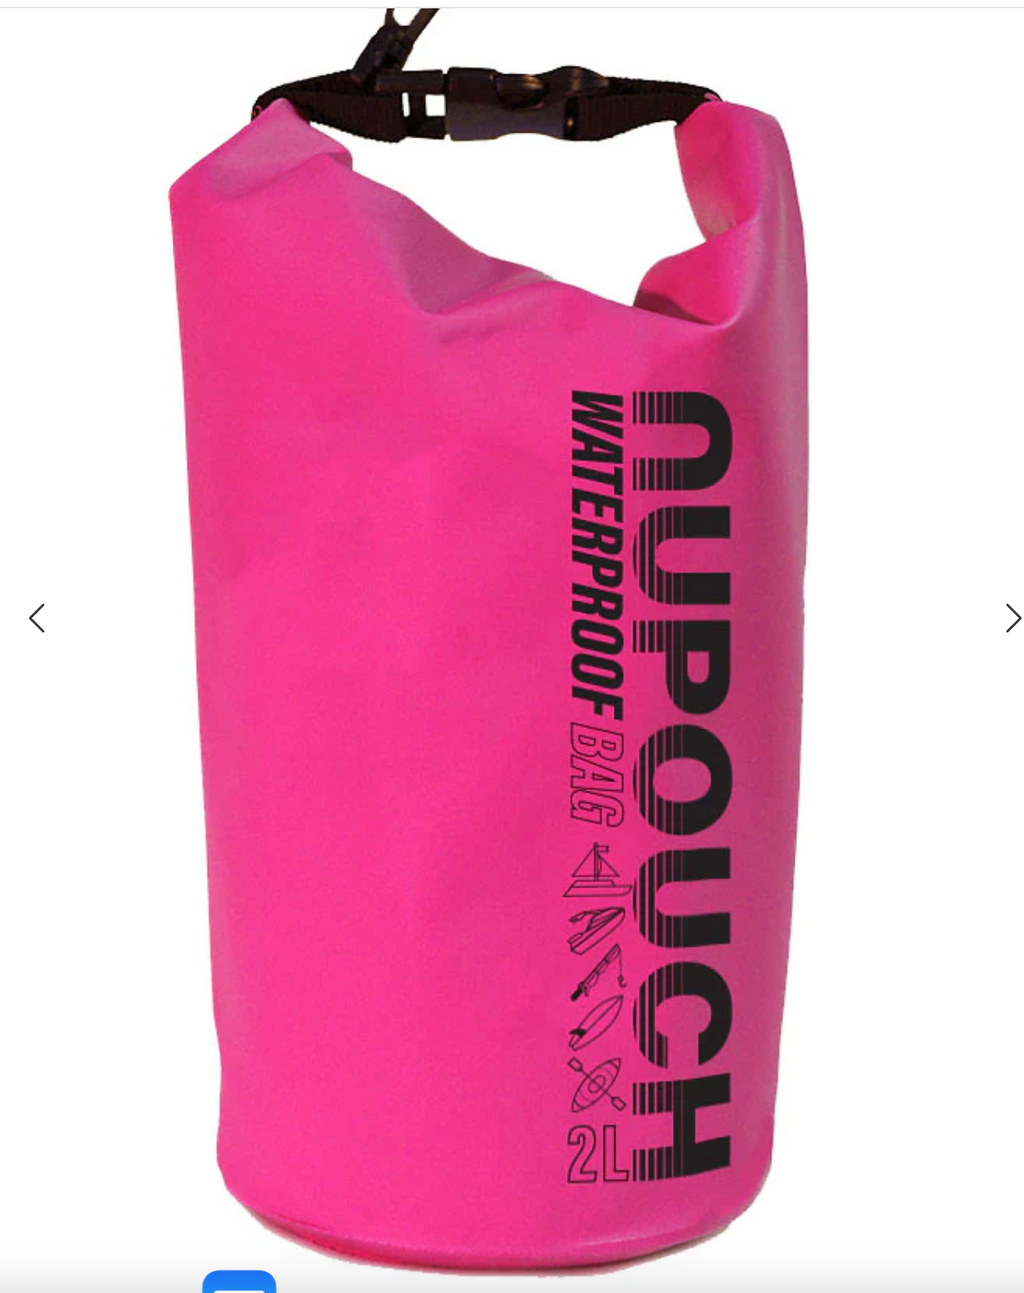 2L waterproof bag (multiple colors)